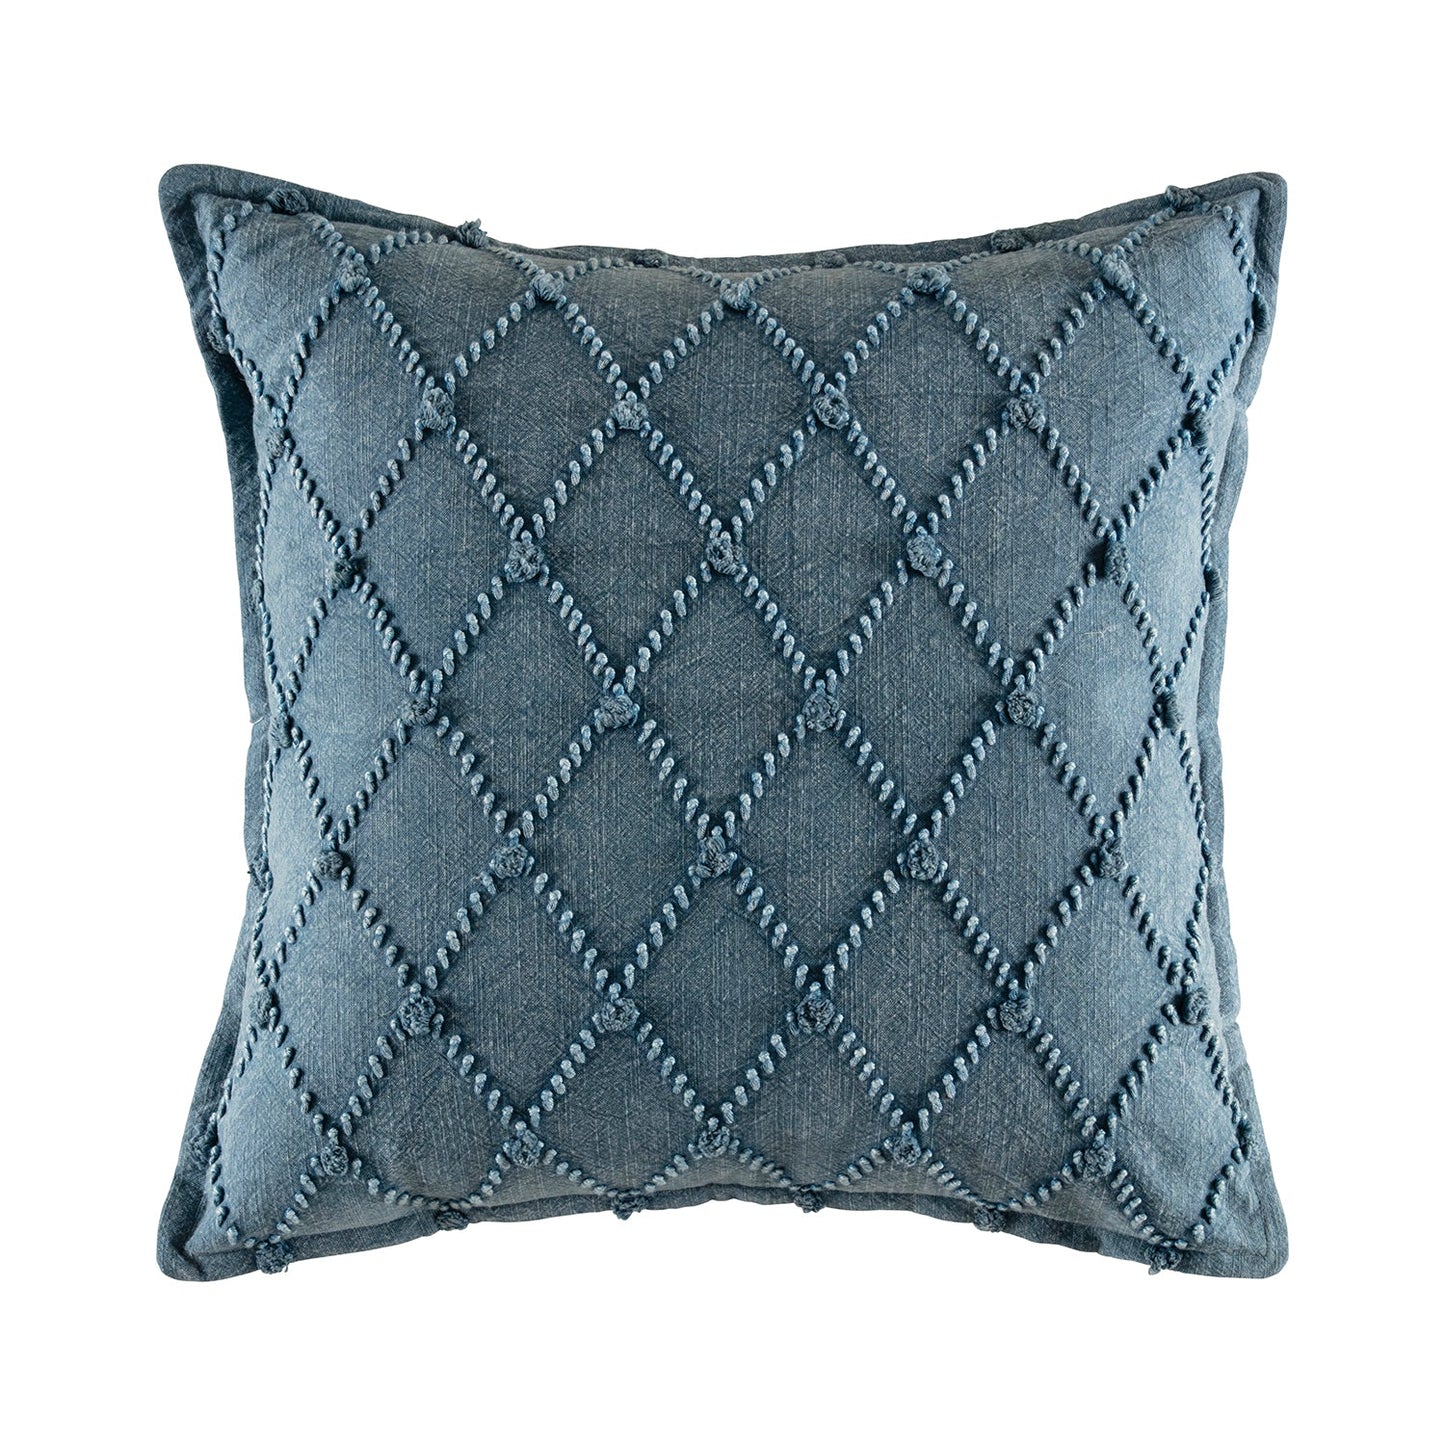 Macmillan Cushion Cushion KAS AUSTRALIA Blue Square 50x50 cm